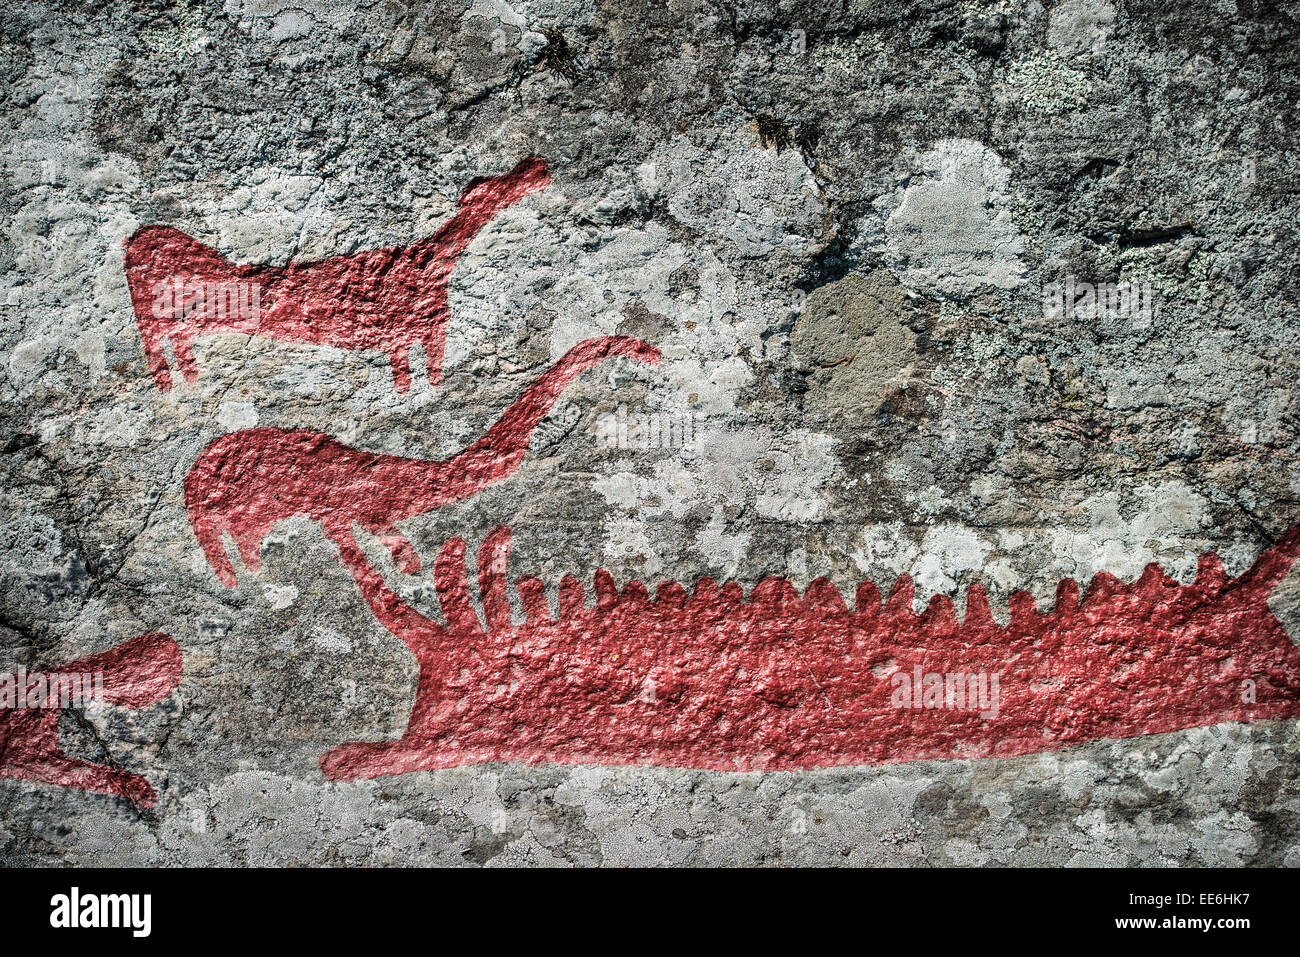 Grabado en roca Himmelstalund uno de Suecia la mayor colección de petroglifos con más de 1660 imágenes de la edad de bronce Foto de stock